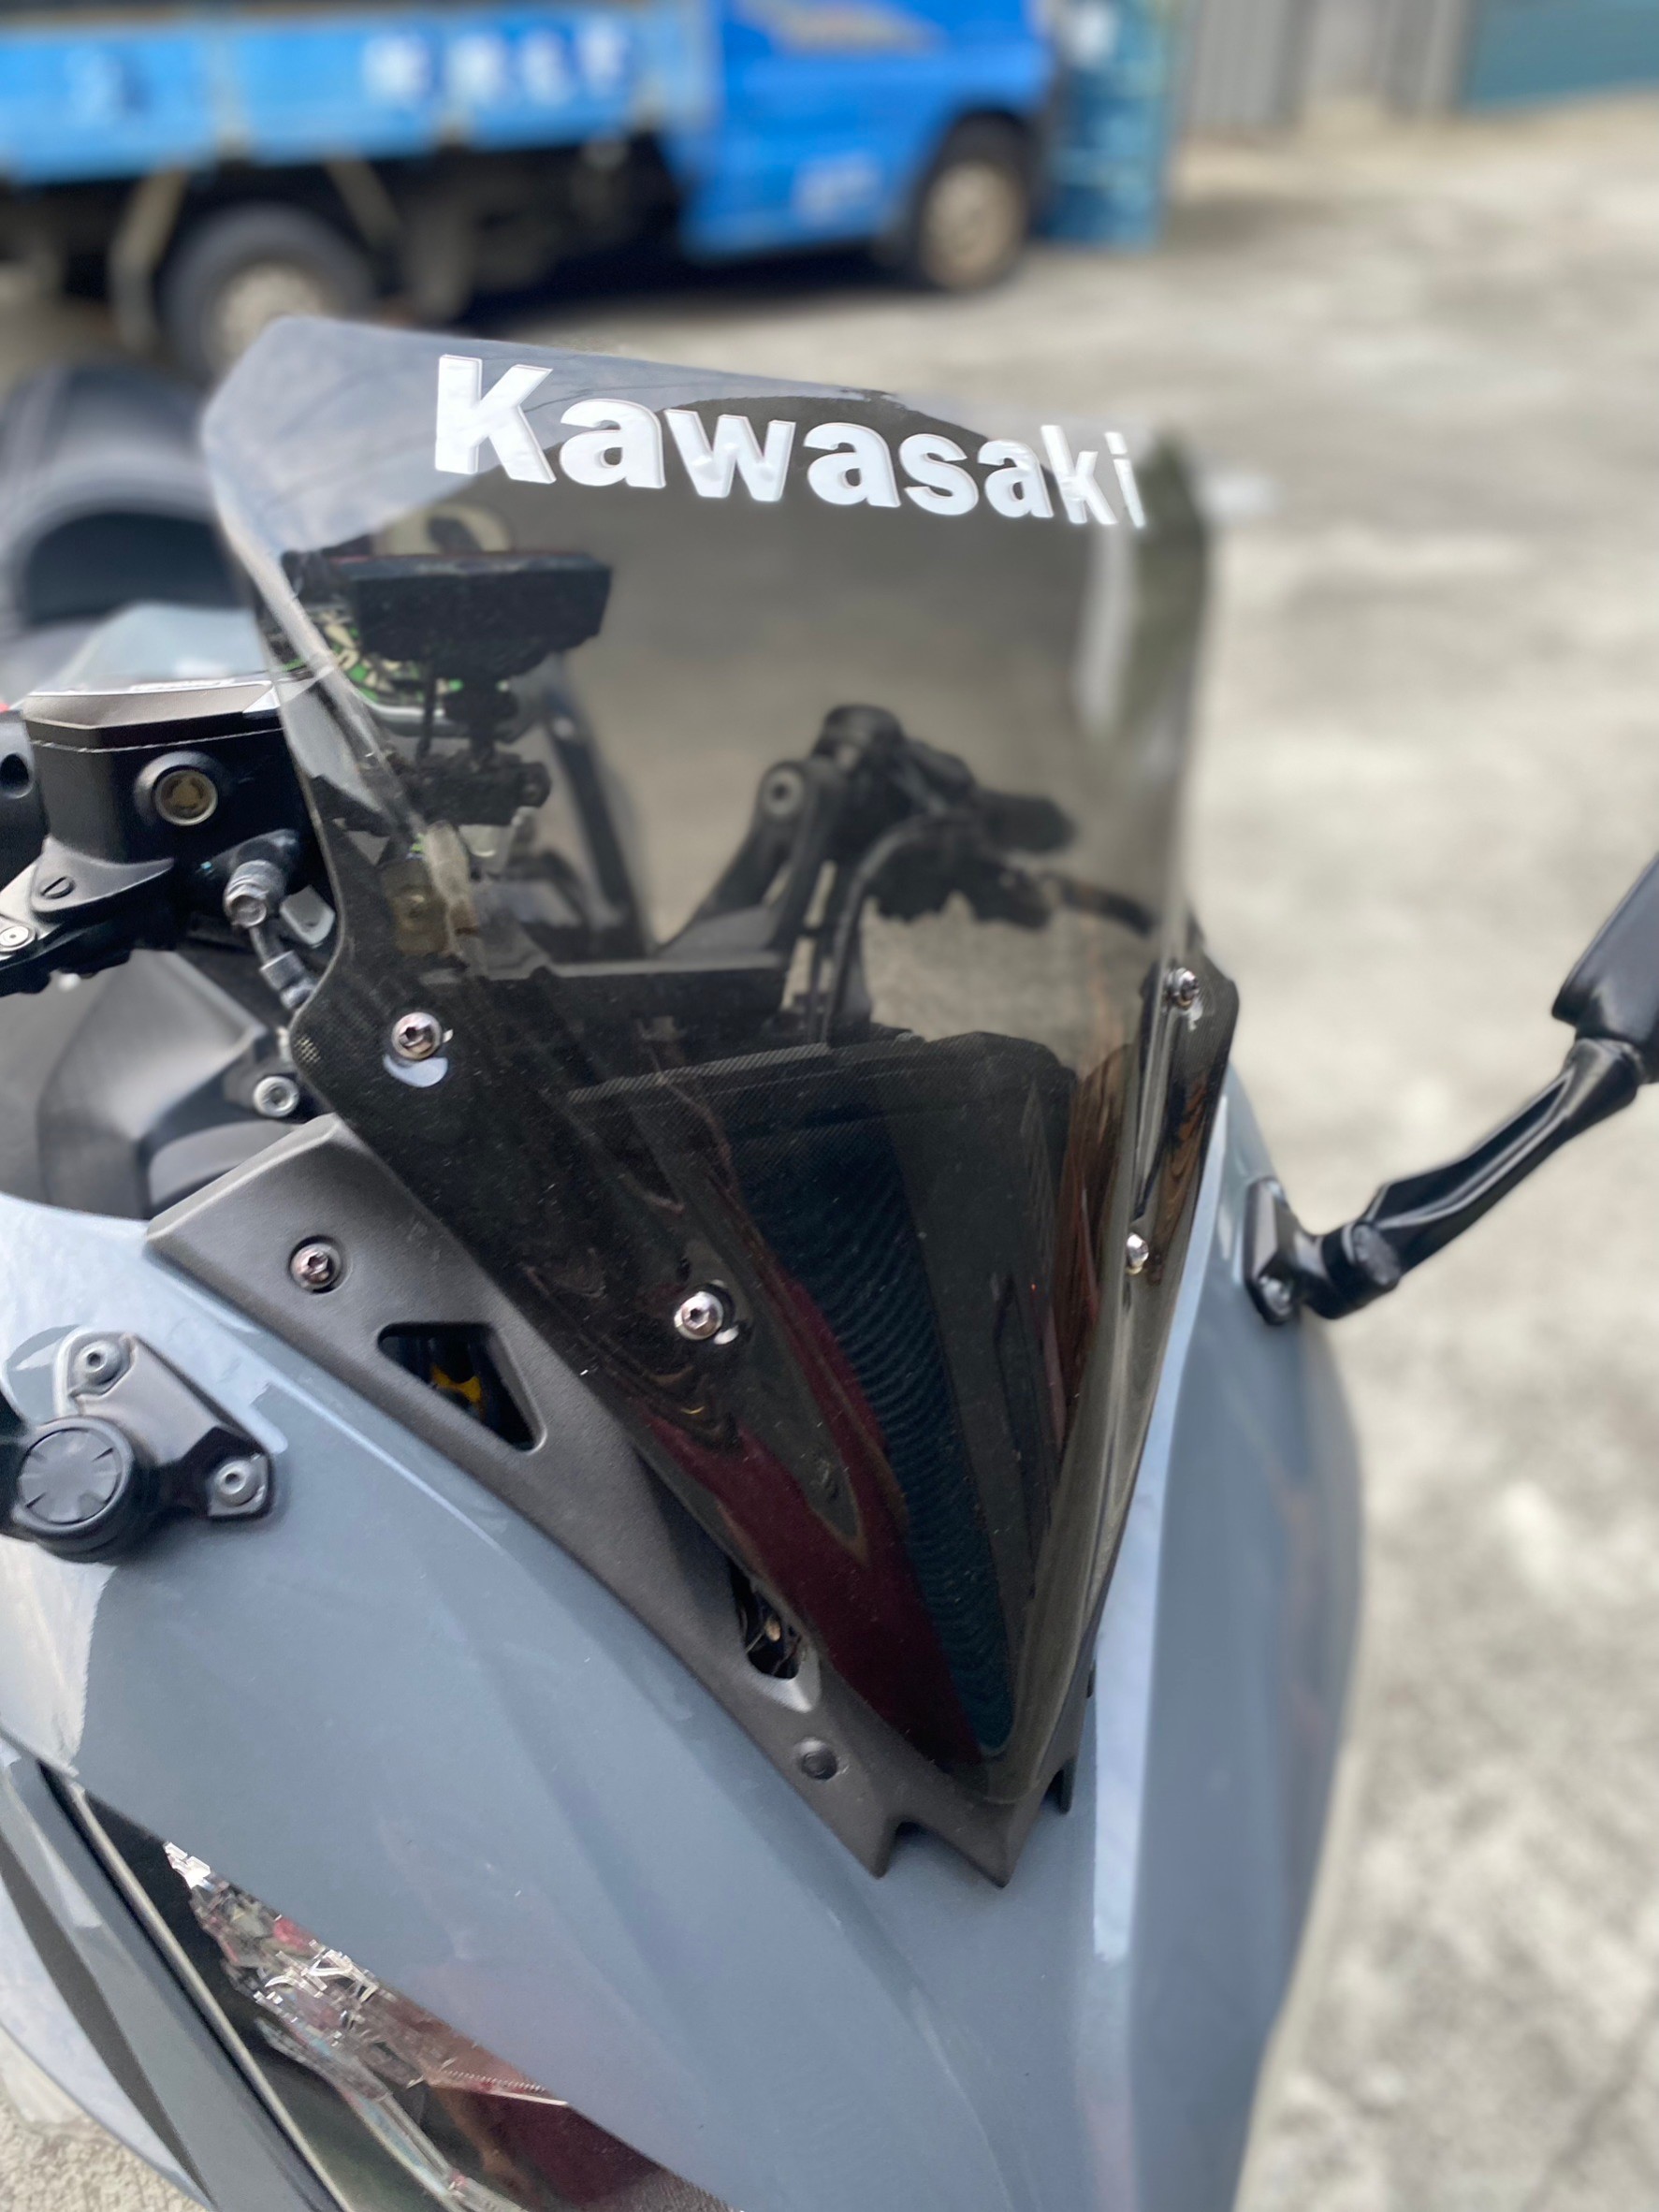 KAWASAKI NINJA650 - 中古/二手車出售中 Kawasaki #Ninja650 風鏡、拉桿、防倒球、側包&支架、南極星、全段蠍管 | Motoshen大聖二輪廣場